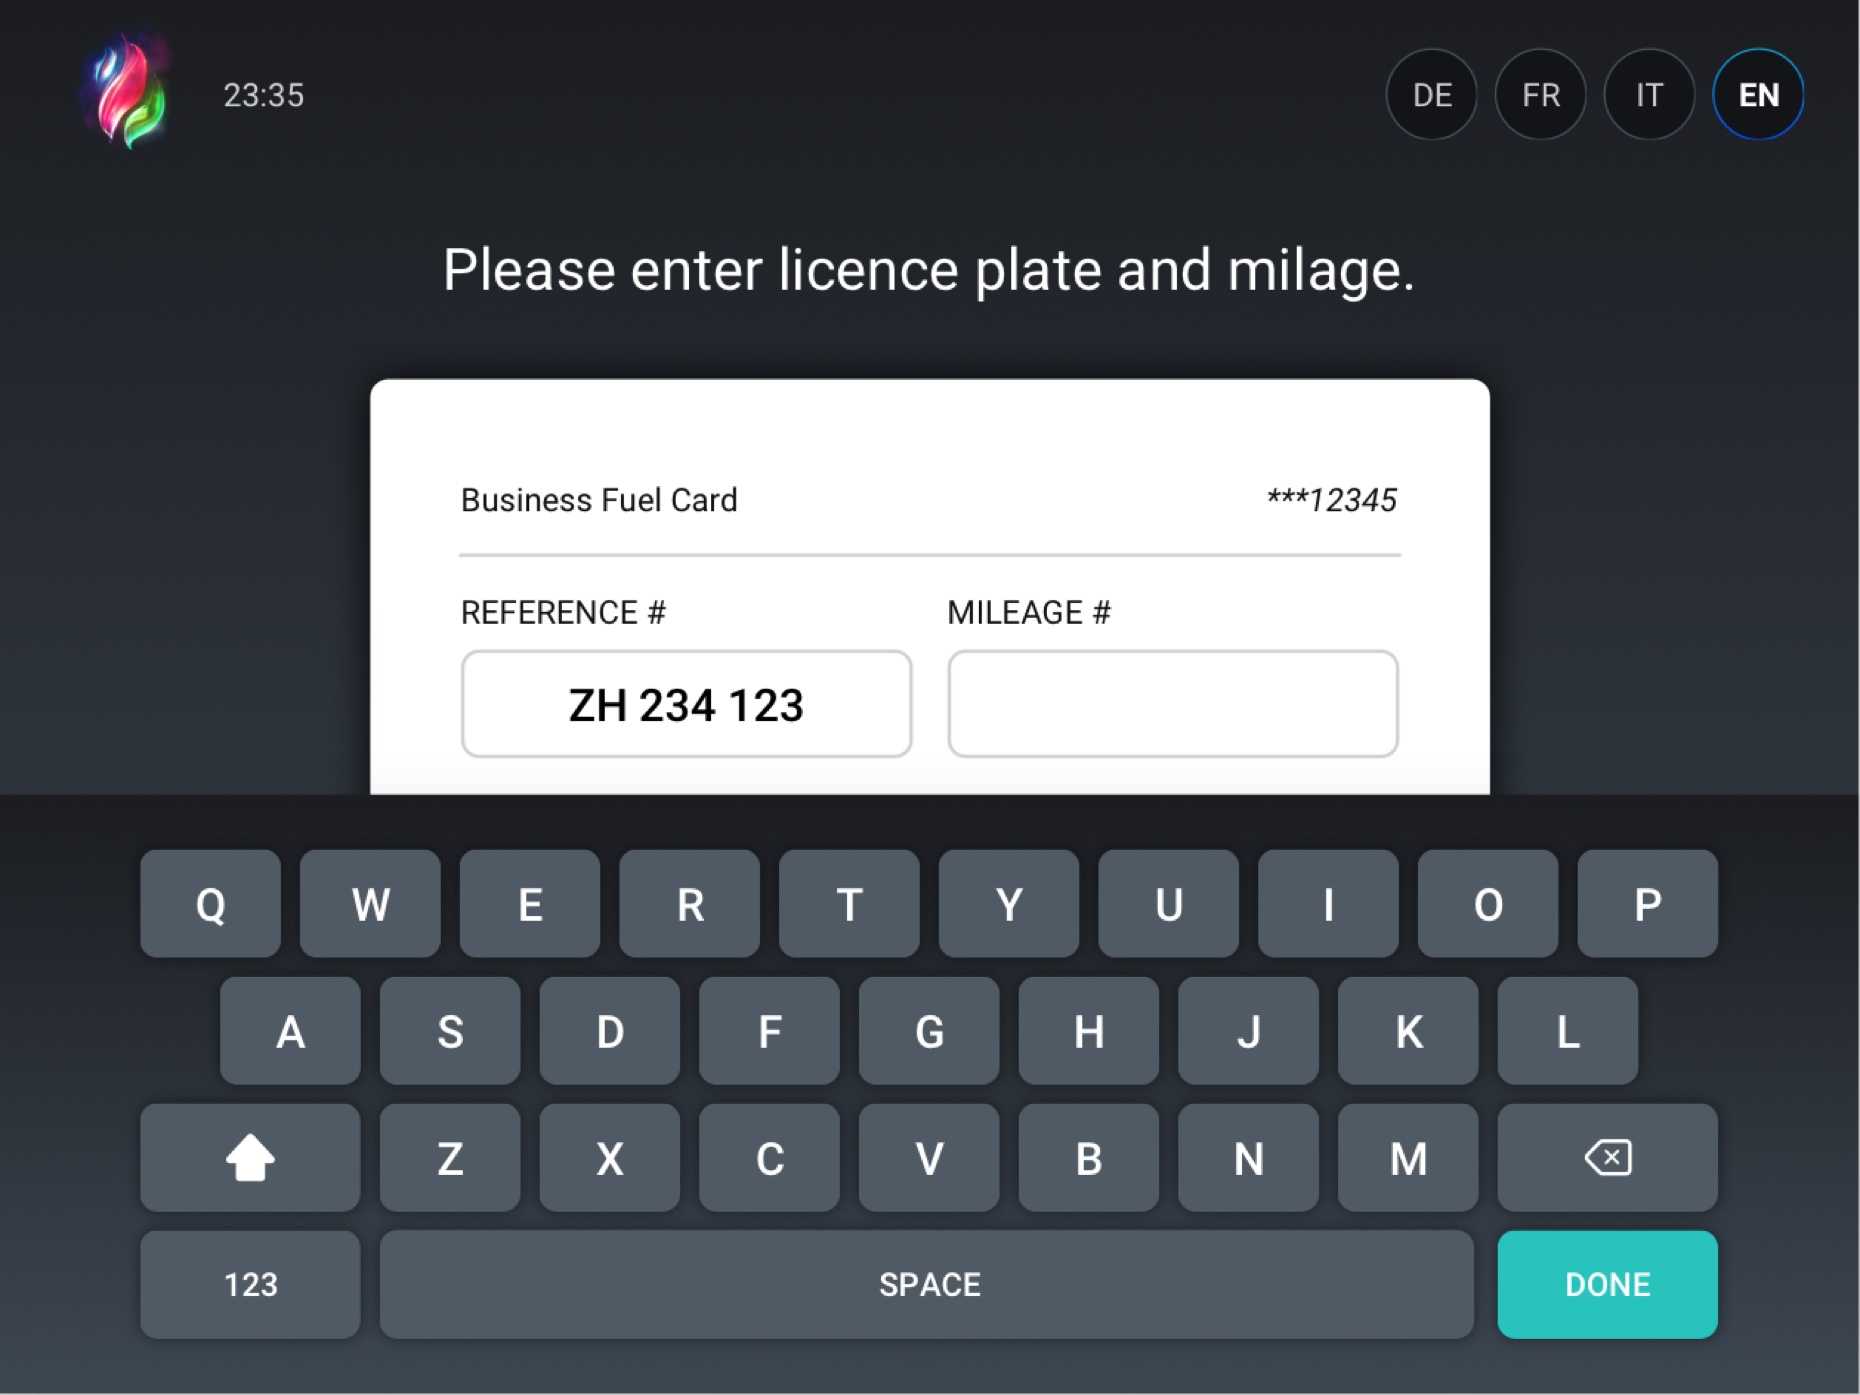 Detalle de la experiencia de usuario cuando los usuarios envían los datos de la tarjeta en la interfaz de autopago.